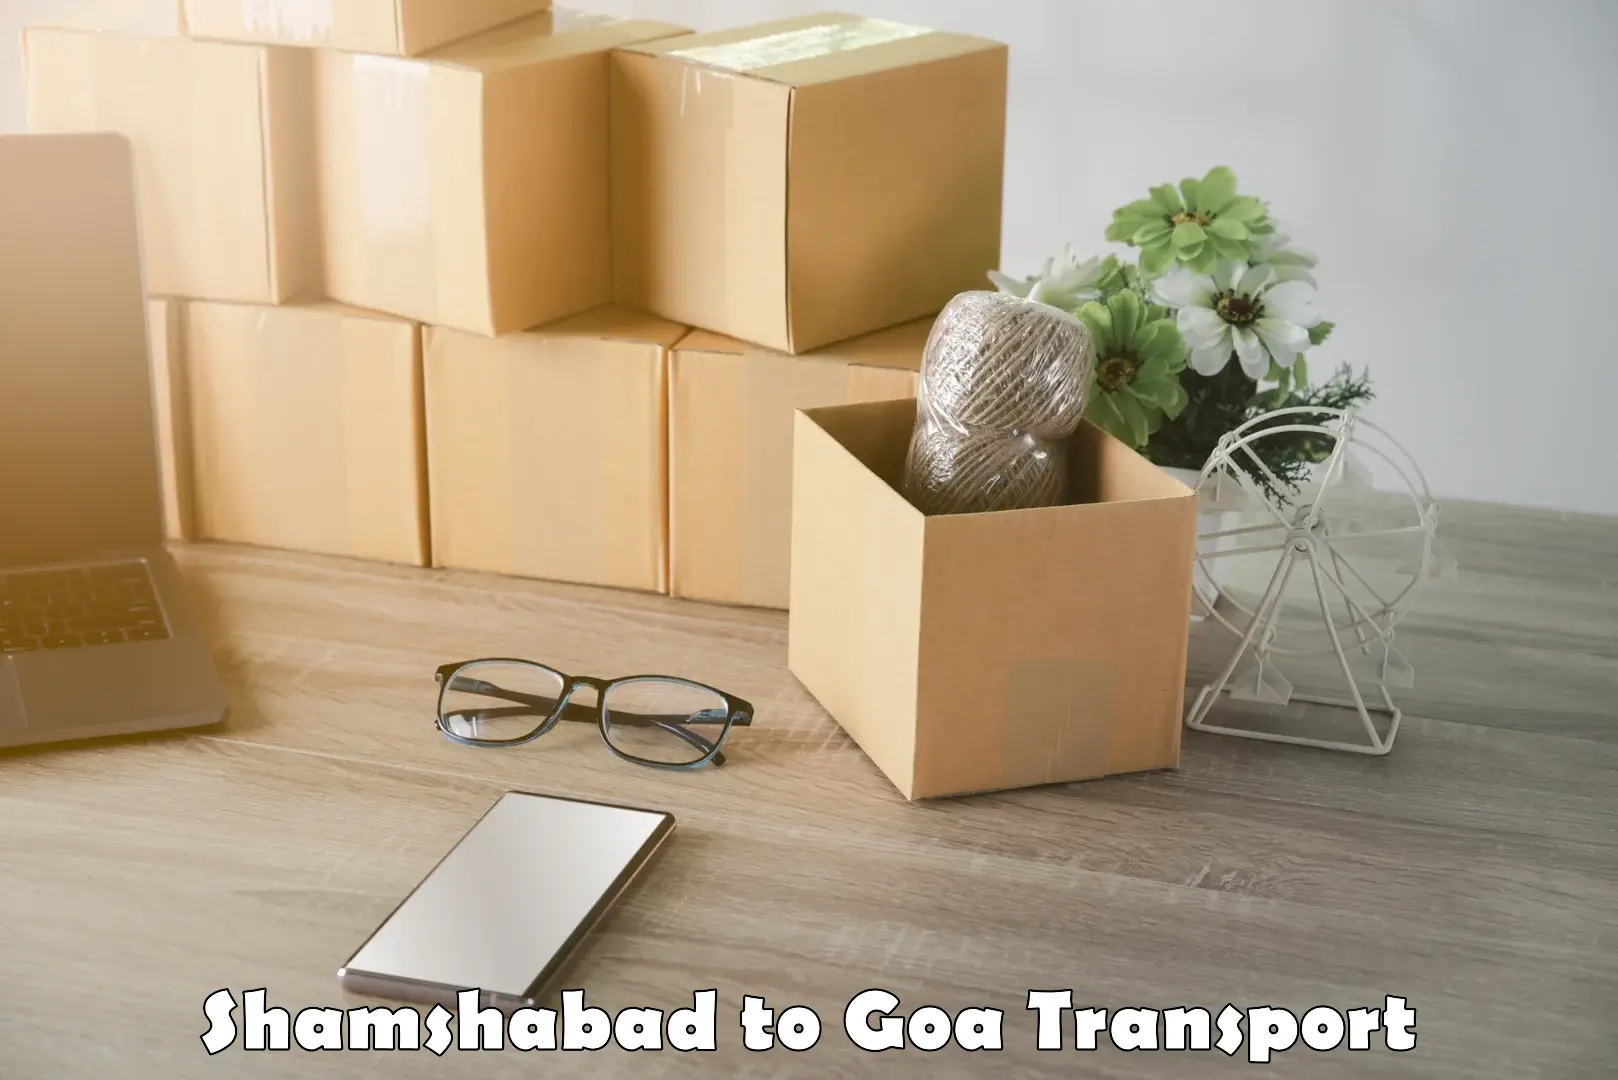 Vehicle transport services Shamshabad to IIT Goa